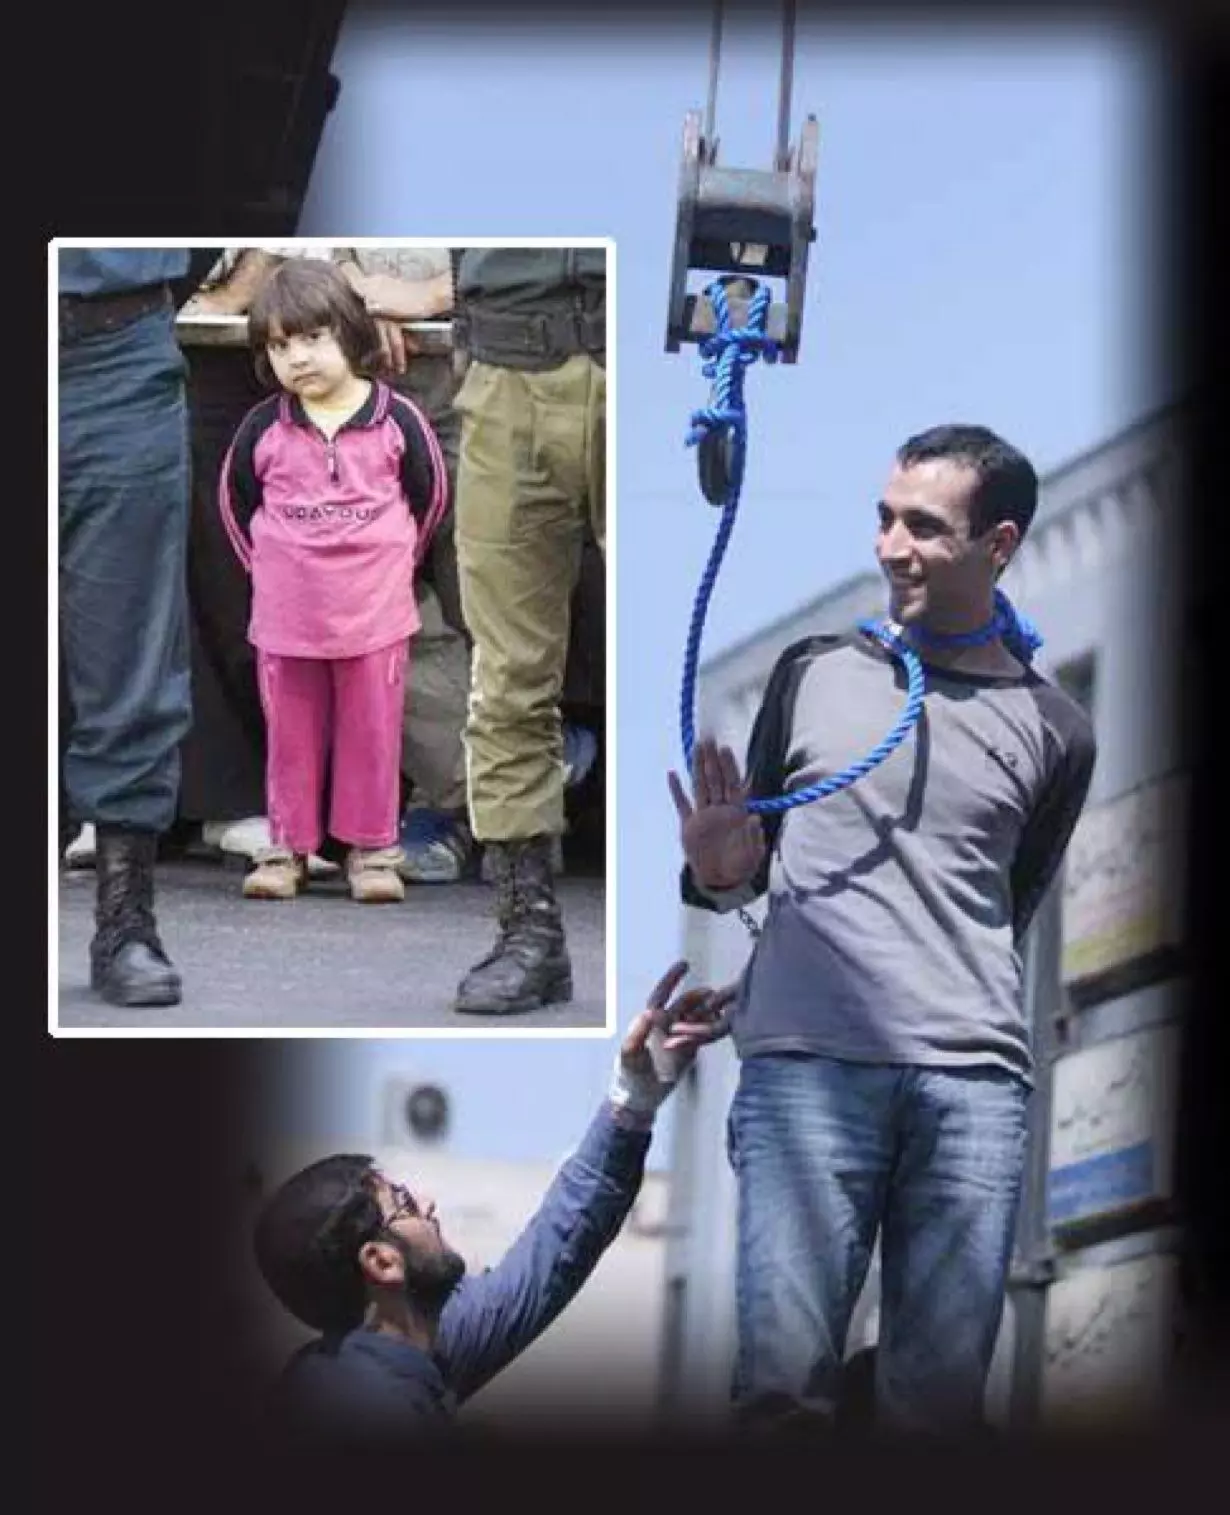 आज ये फोटो सोशल मीडिया पर क्यों वायरल है?   माजिद कावौसिफ़र फ़ाँसी लगते वक़्त अपनी बेटी की तरफ हाथ हिलाकर  क्यों मुस्करा रहा है? क्या है वो घटना ? ईरान के राष्ट्रपति से क्या संबंध है ?